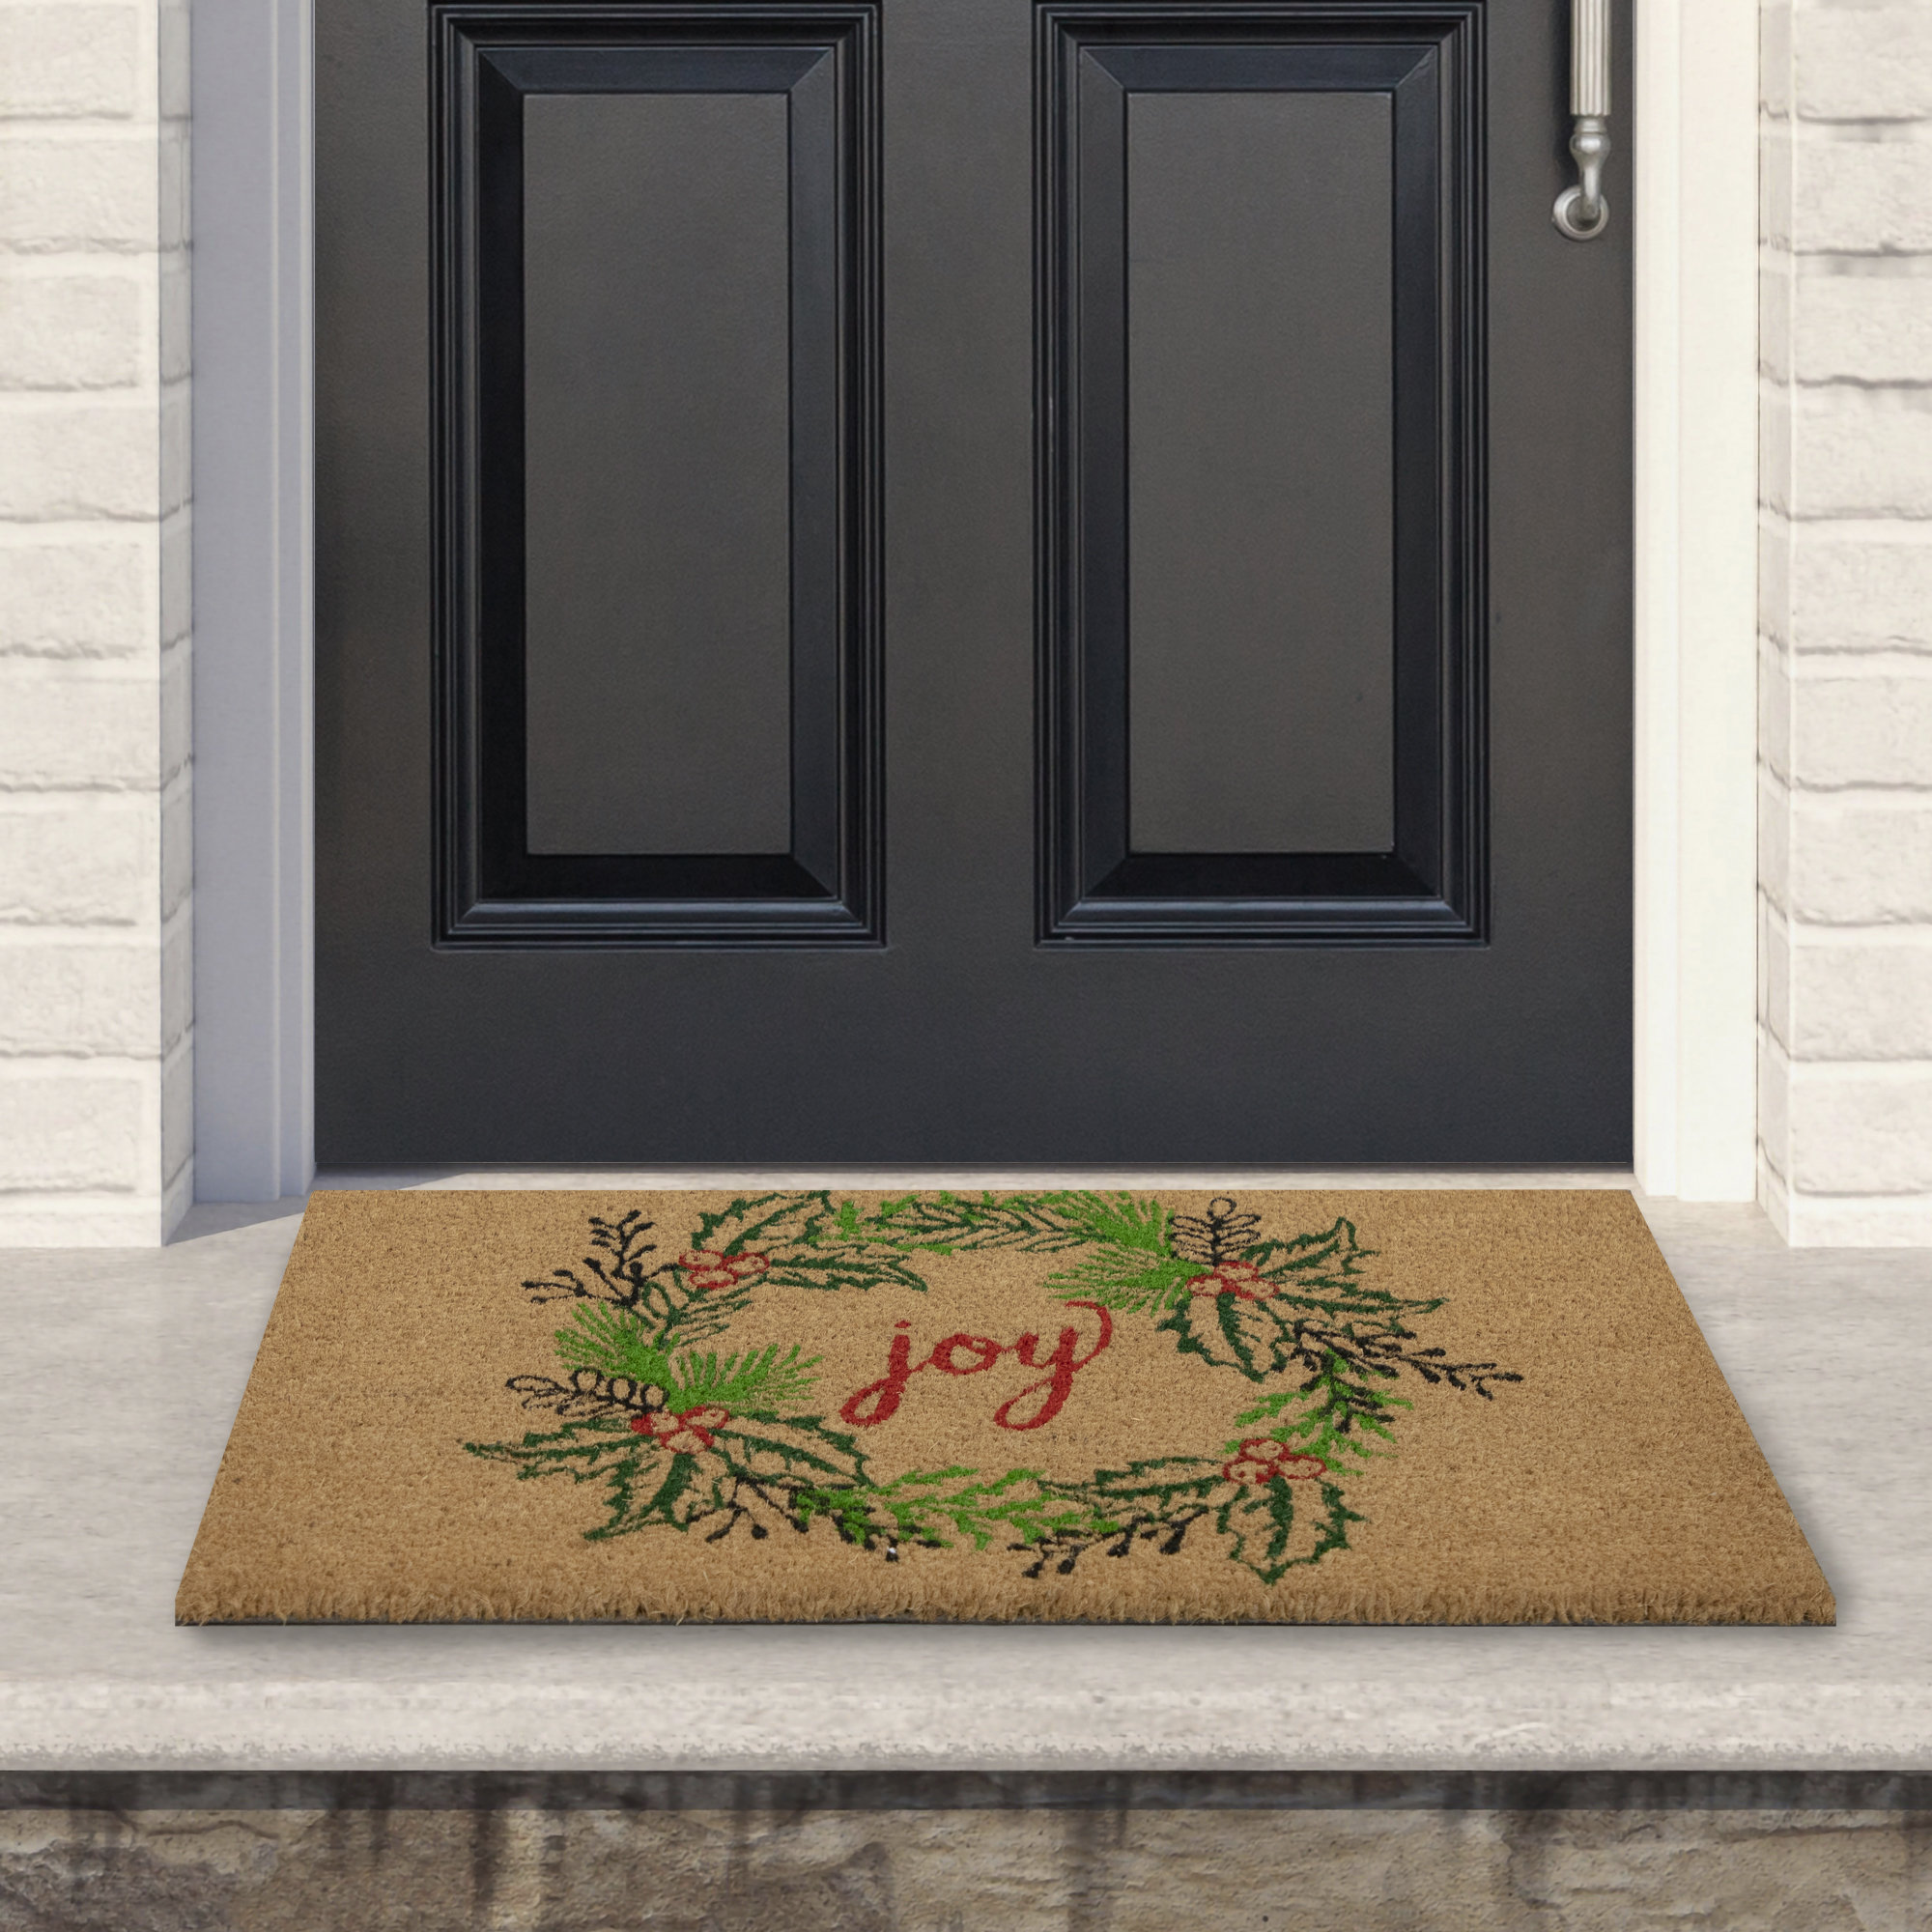 https://assets.wfcdn.com/im/87504817/compr-r85/2157/215708844/natural-coir-joy-wreath-christmas-doormat-18-x-30.jpg